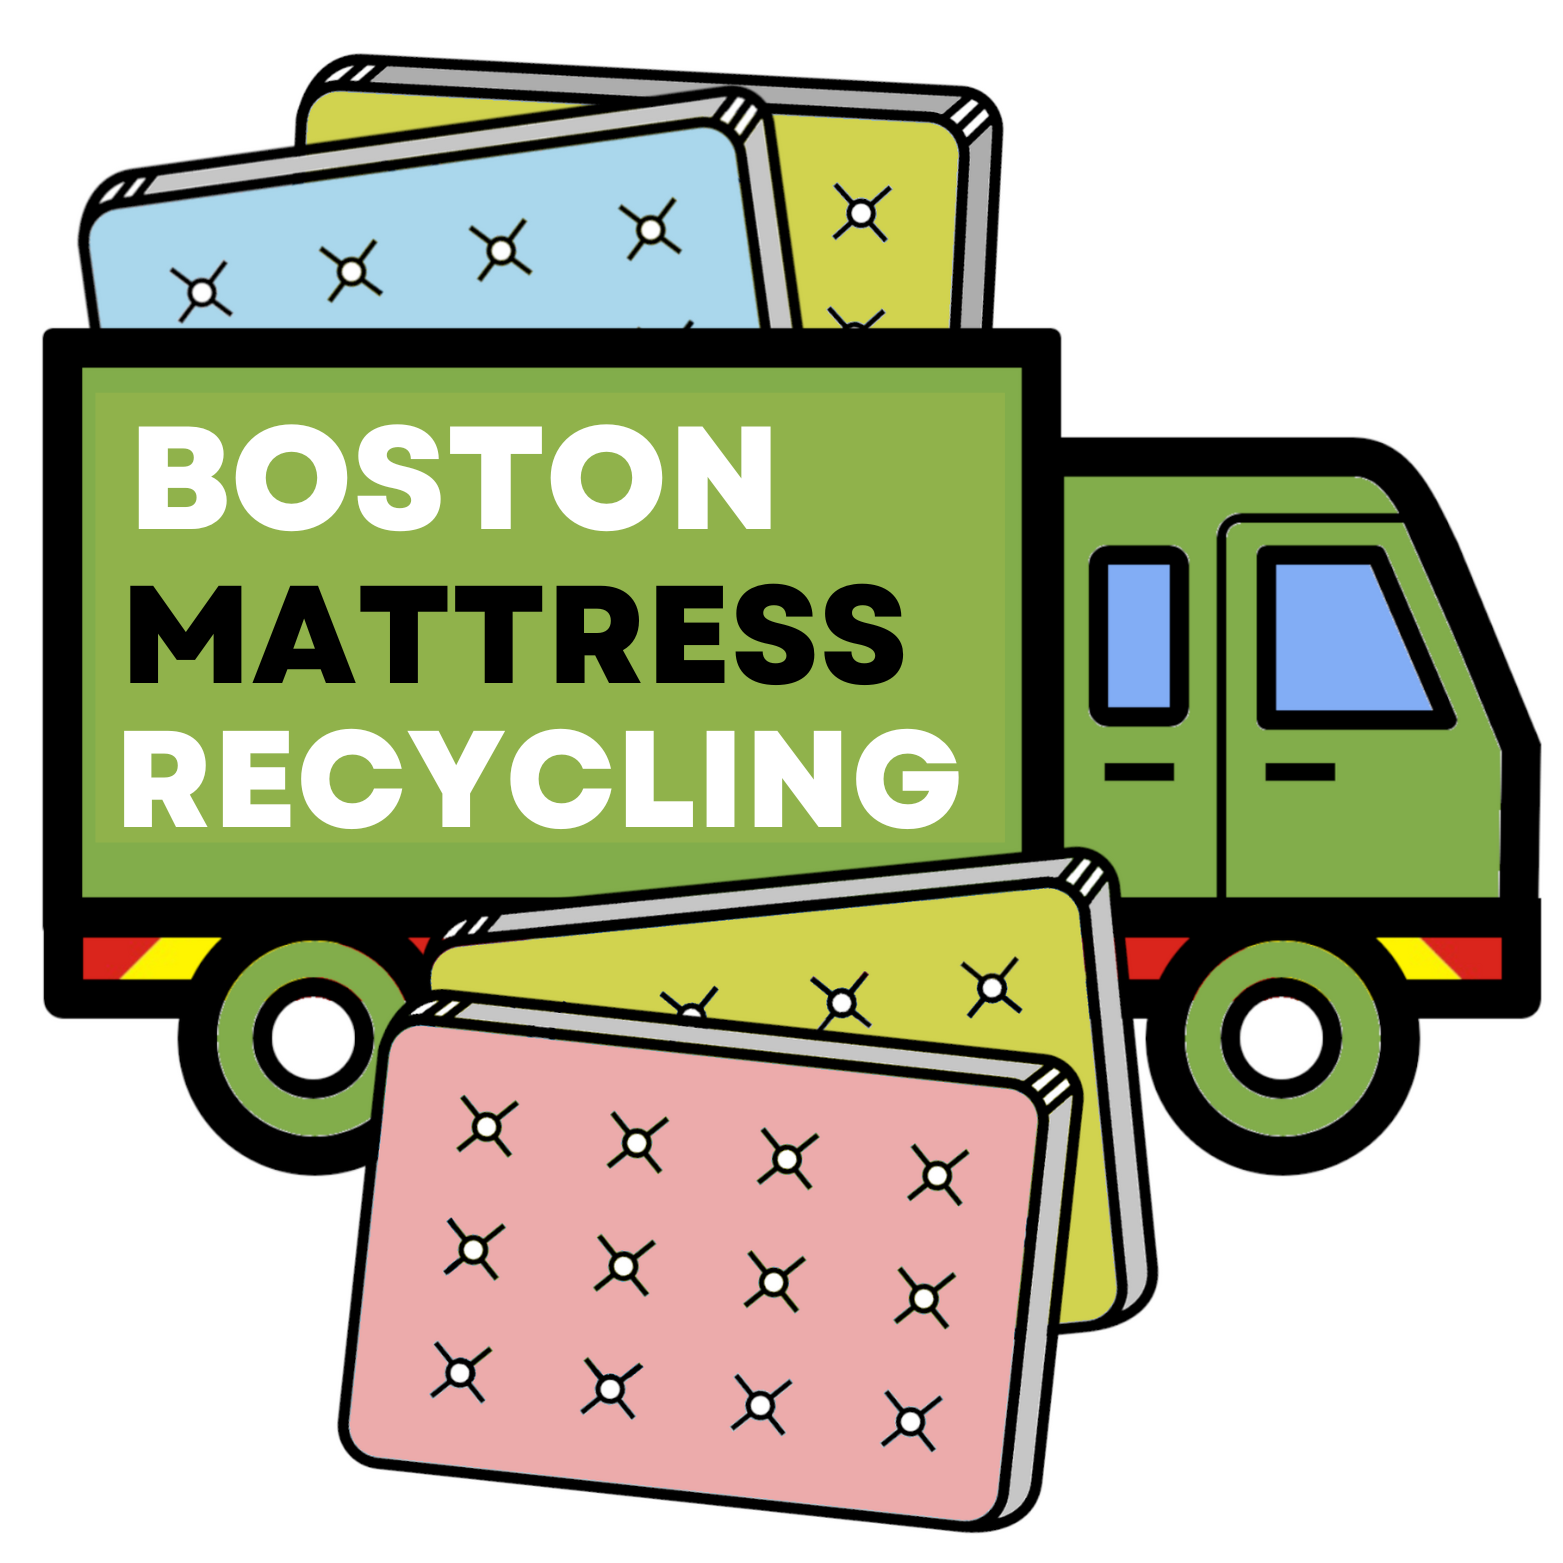 Boston Mattress Recycling